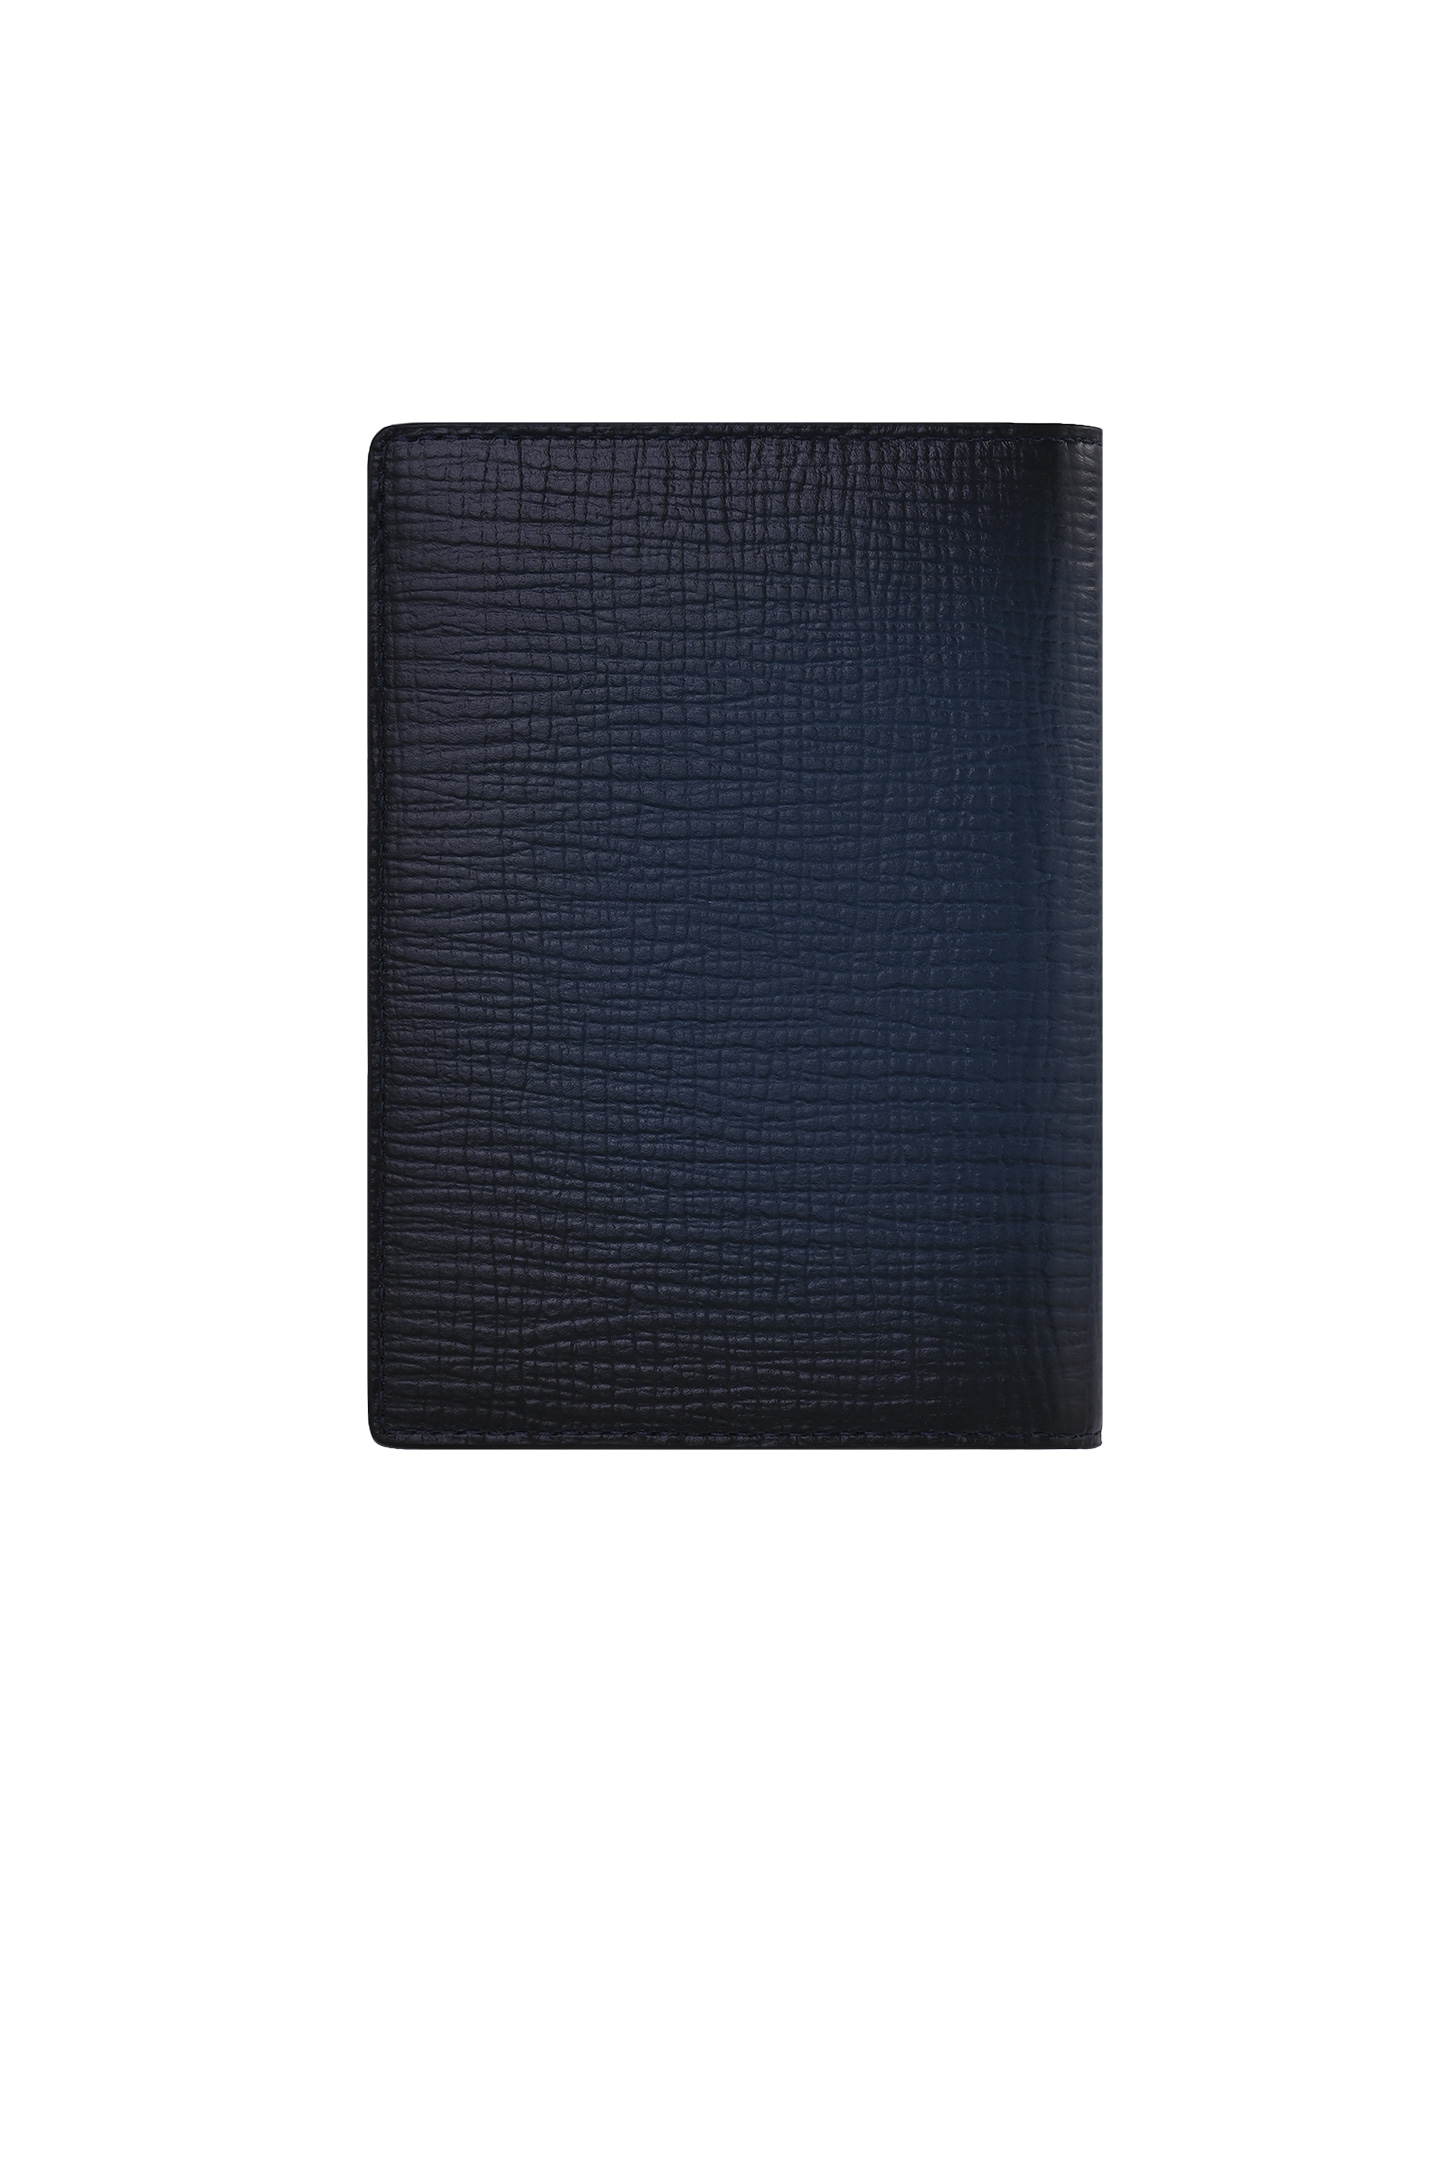 Обложка для паспорта SANTONI UFPPA2379FO-APMCU50, цвет: Темно-синий, Мужской